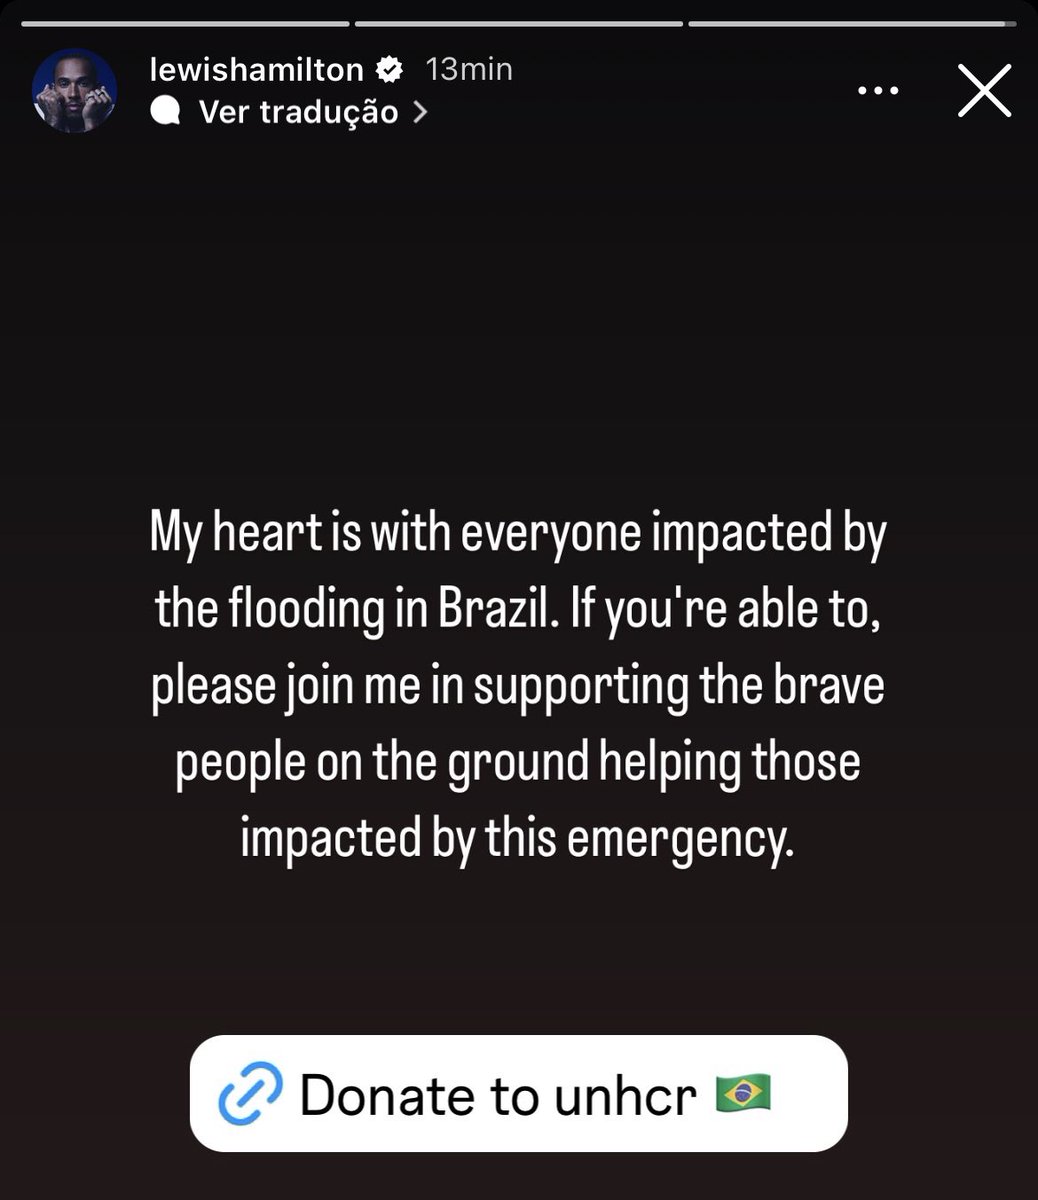 Lewis Hamilton usa sua voz e faz doações para o Rio Grande do Sul. 

“Meu coração está com todos os impactados pela enchente no Brasil. Se você puder, junte-se a mim para ajudar pessoas corajosas que estão ajudando os afetados por essa catástrofe.”